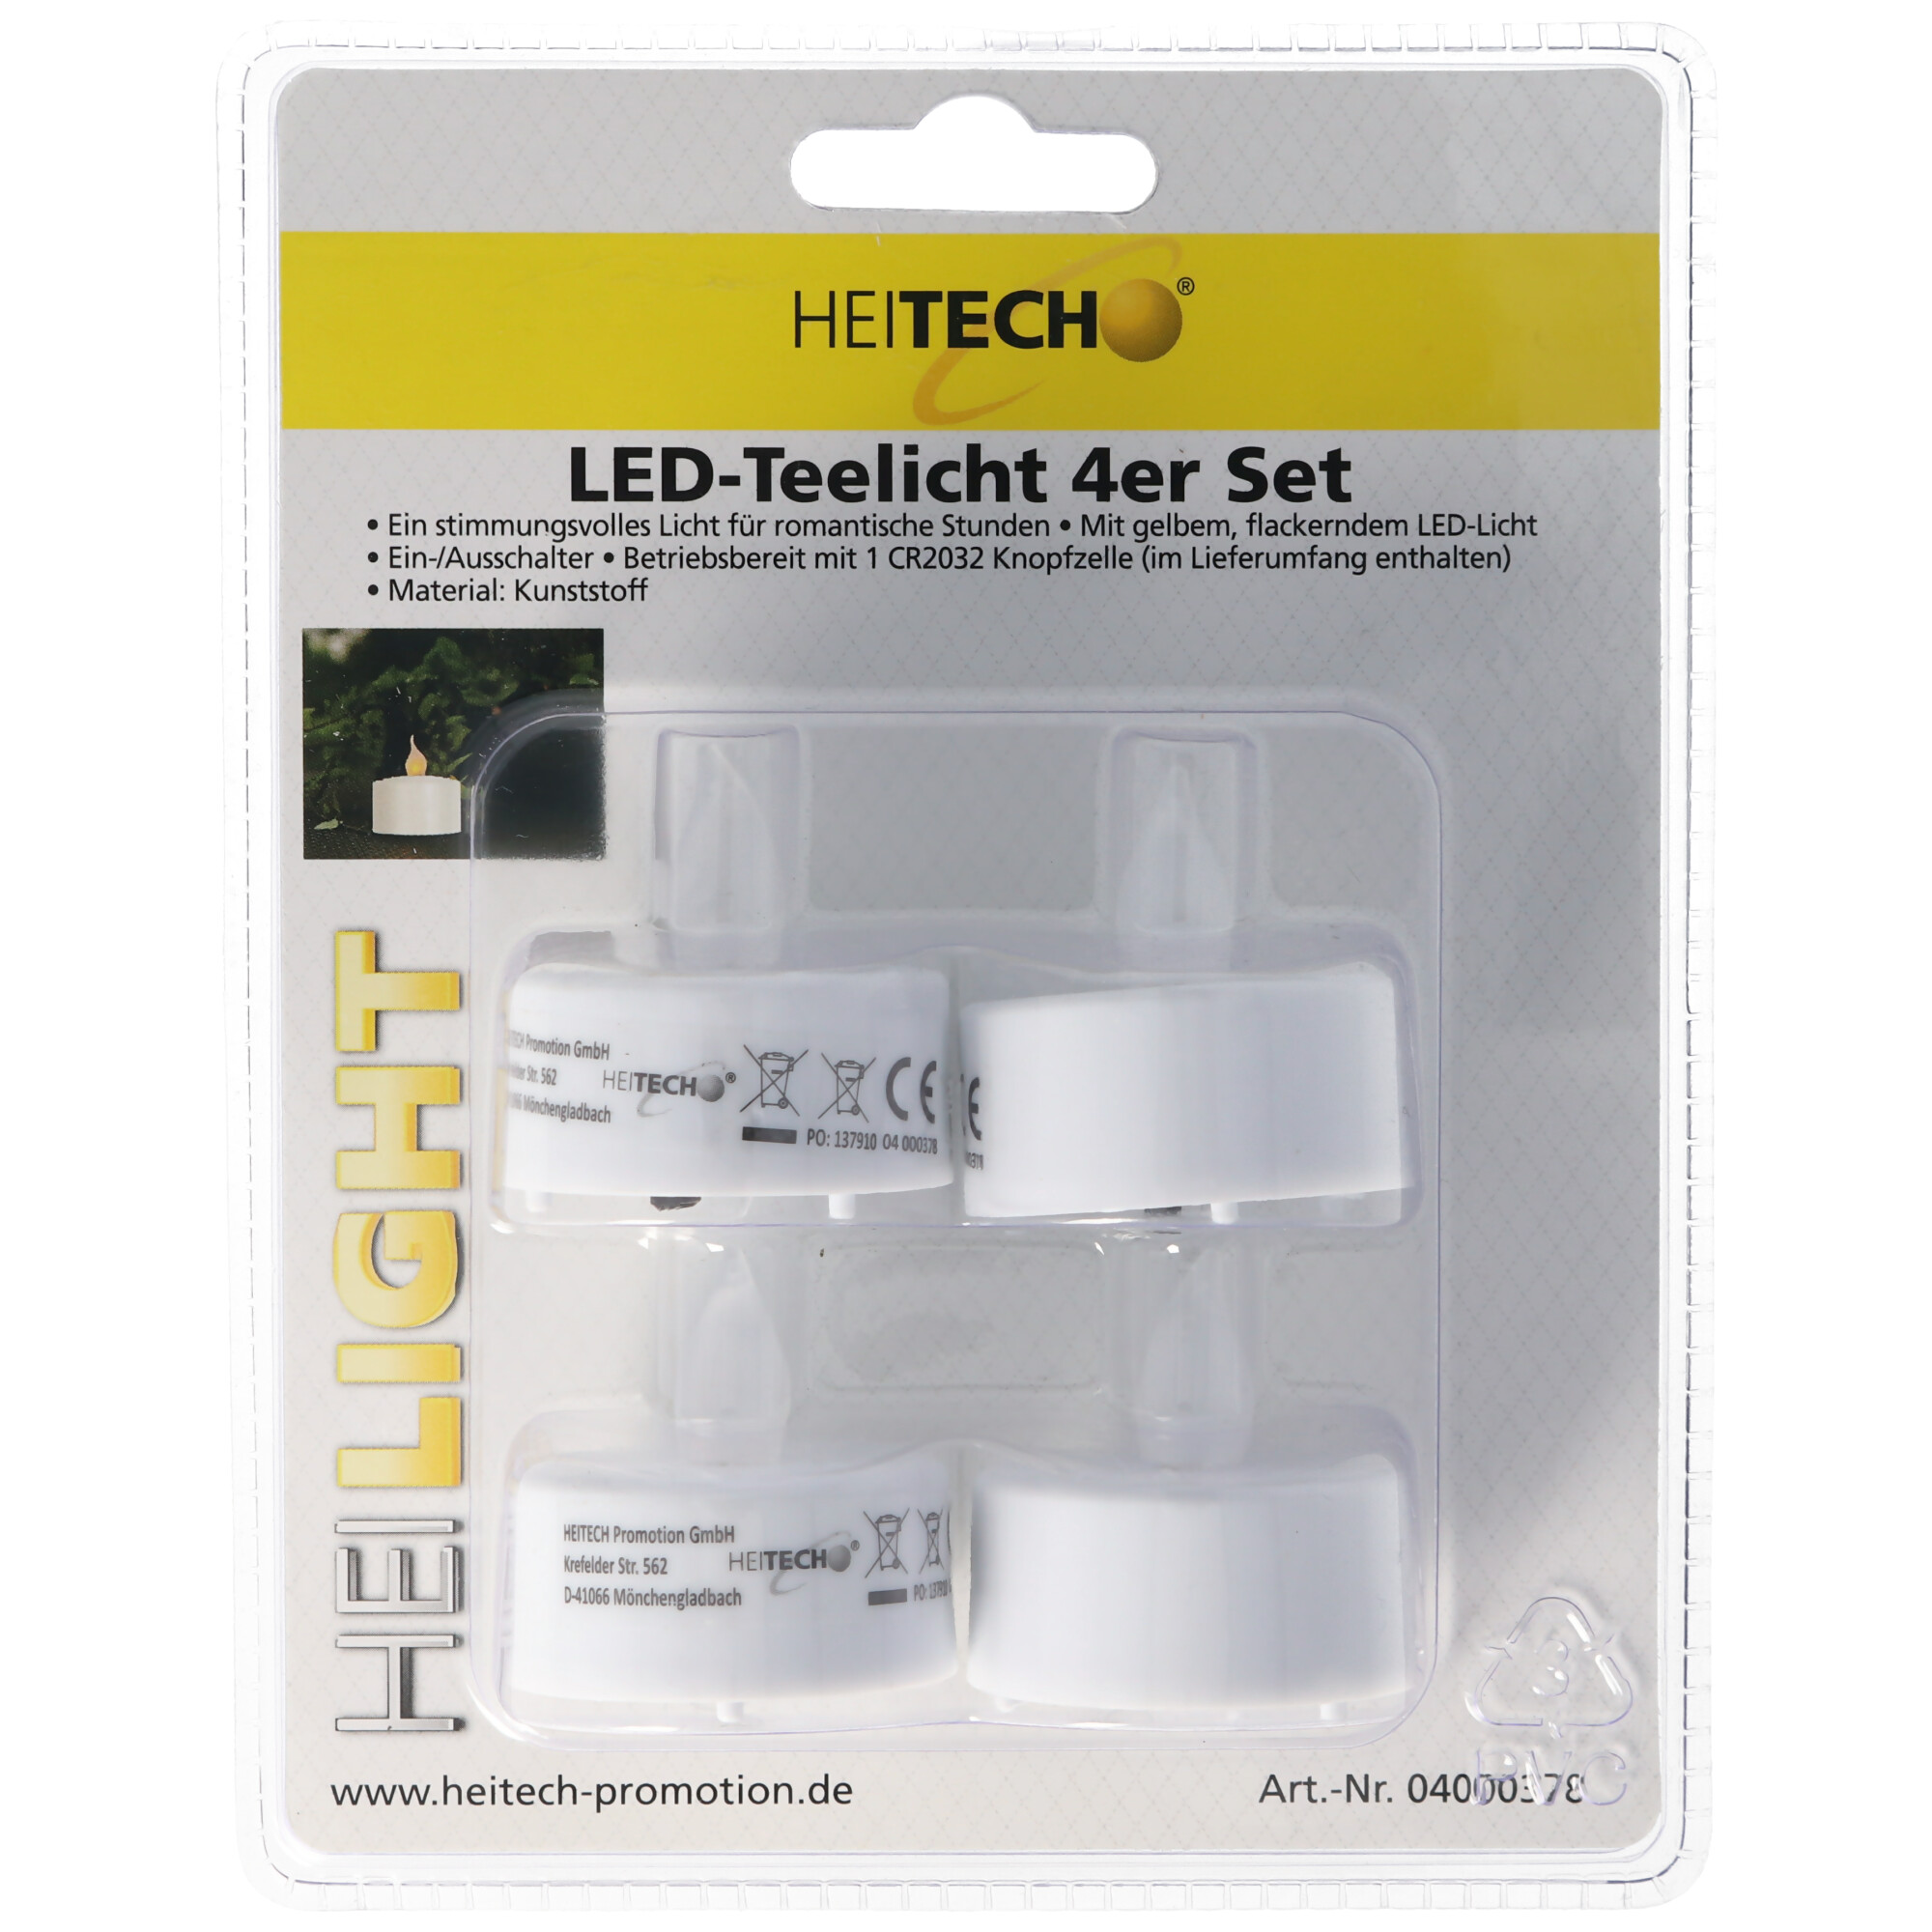 LED-Teelicht 4er Set, LED Teelichter mit gelbem, flackerndem LED-Licht, ohne Timer, inklusive Batterien